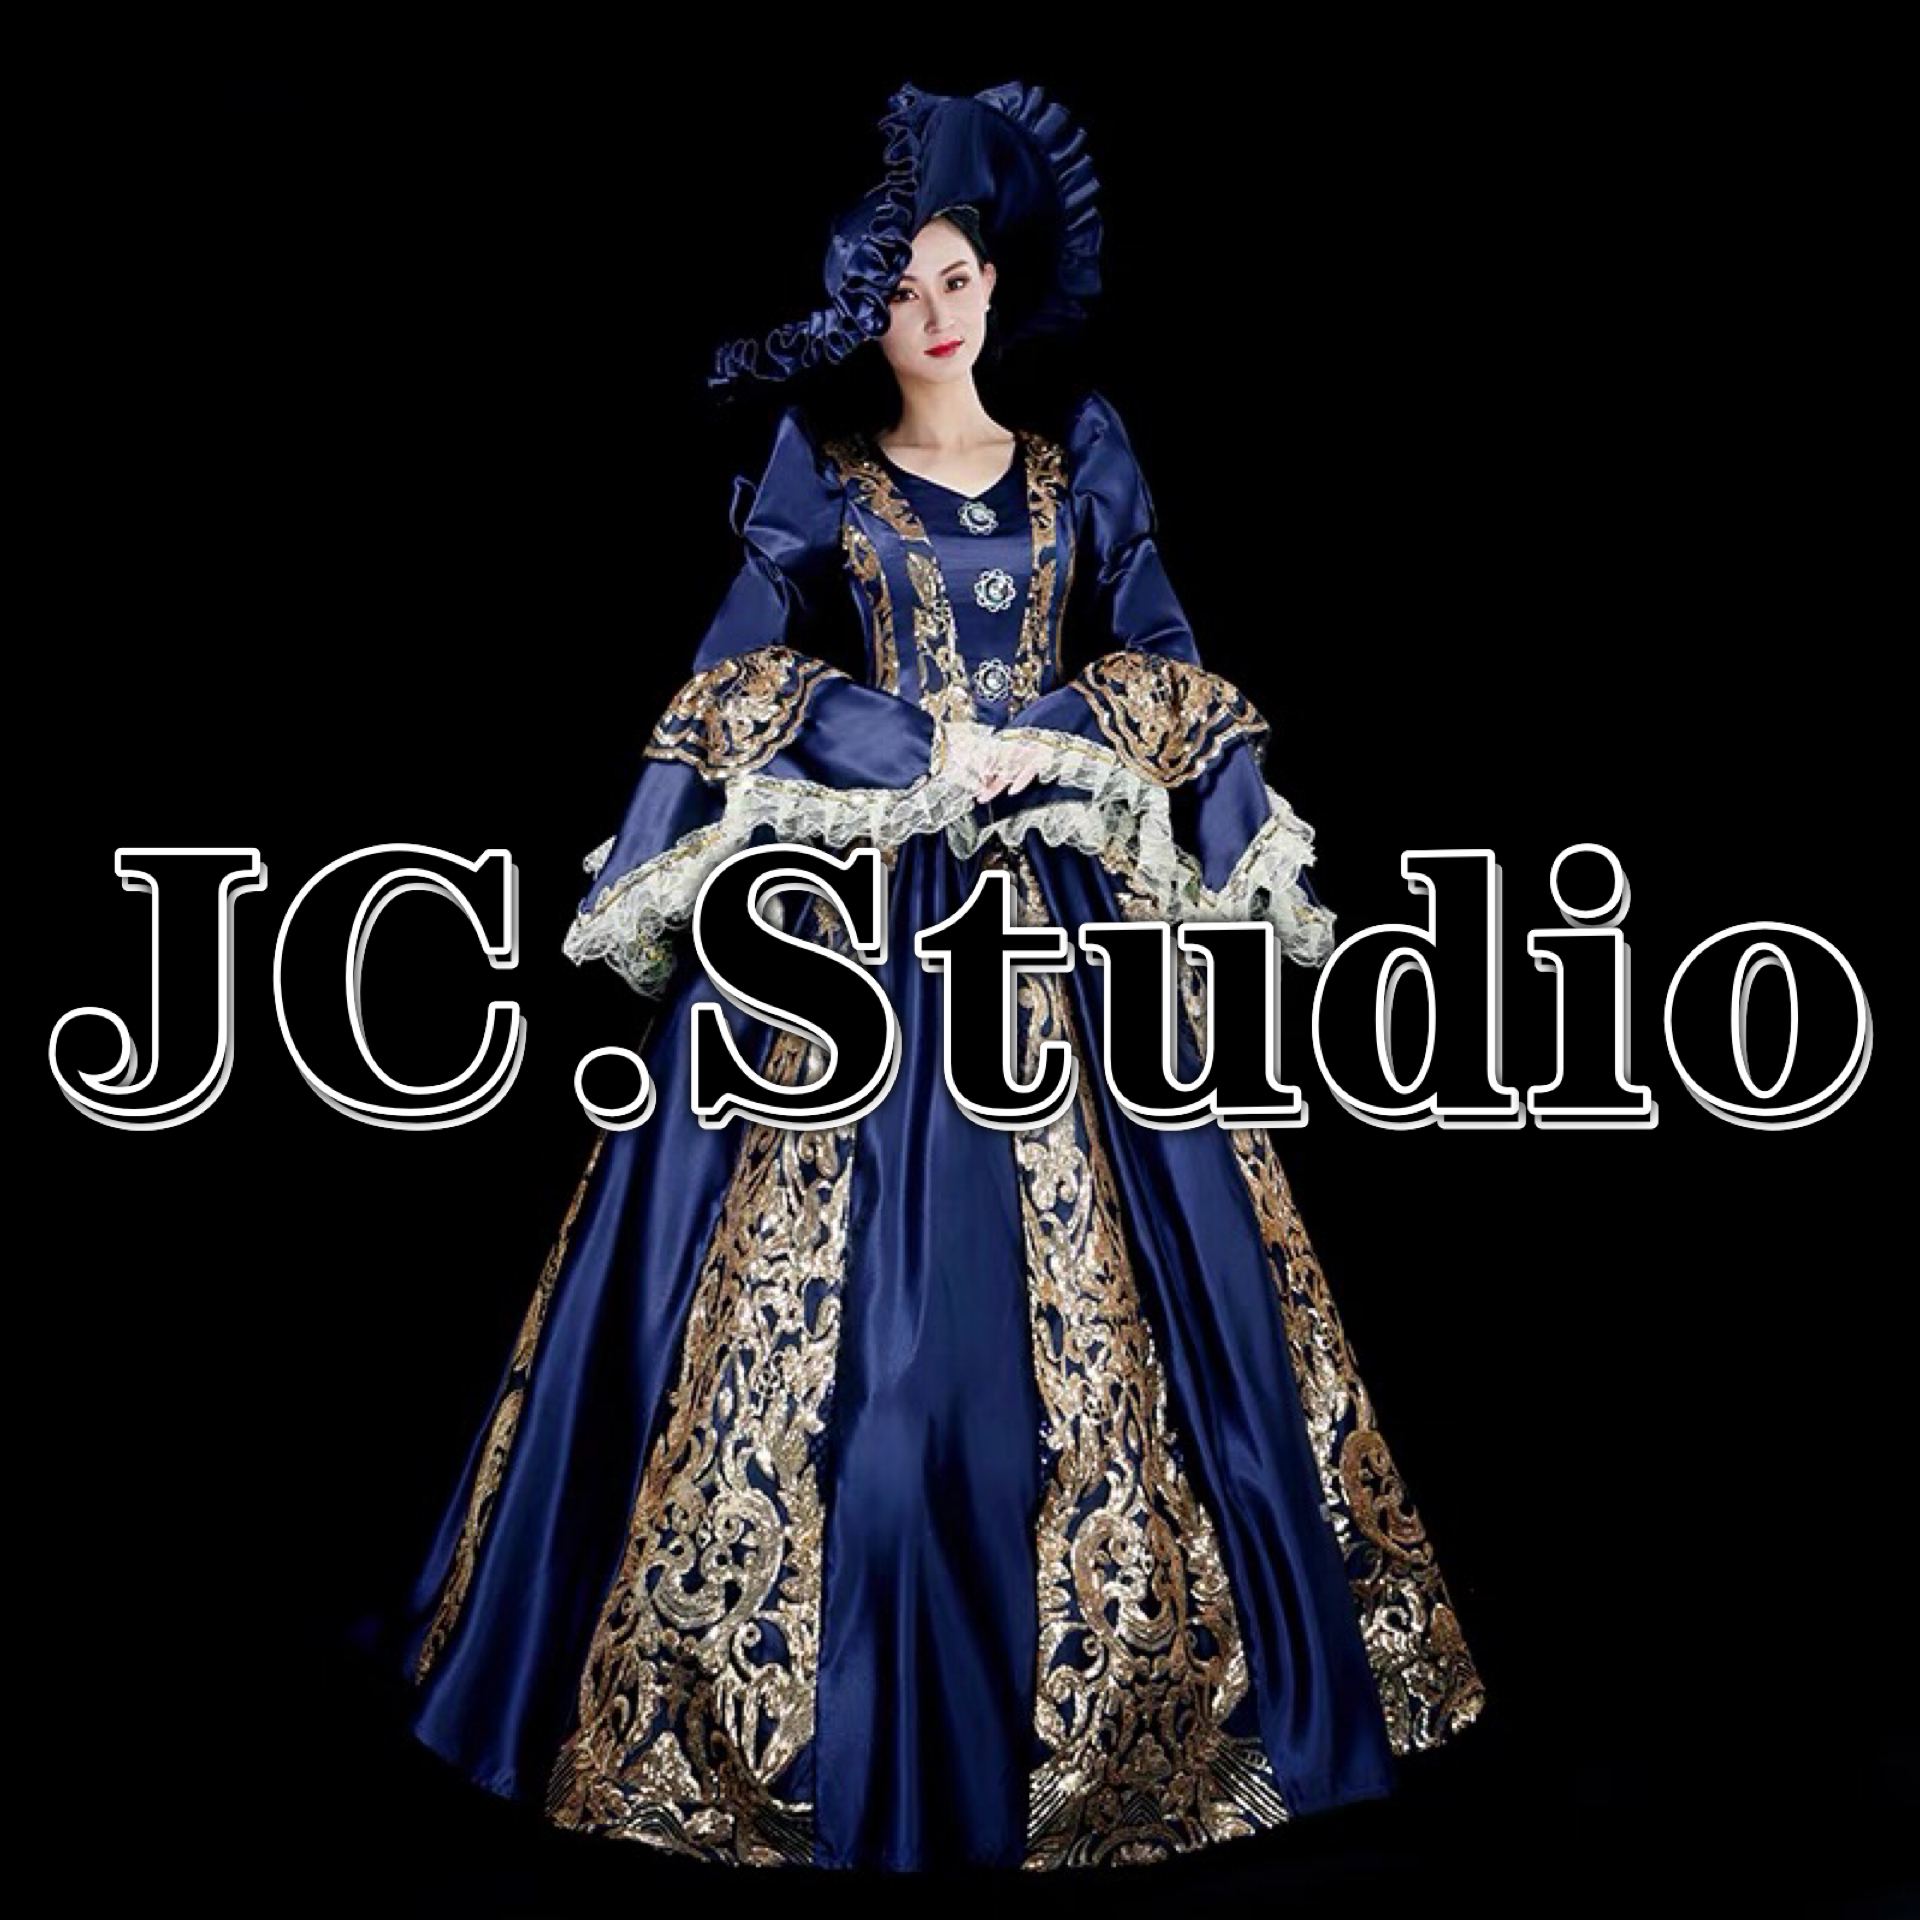 欧洲古典宫廷风中世纪洋装欧派演出舞台装复古欧式贵族晚礼服裙女